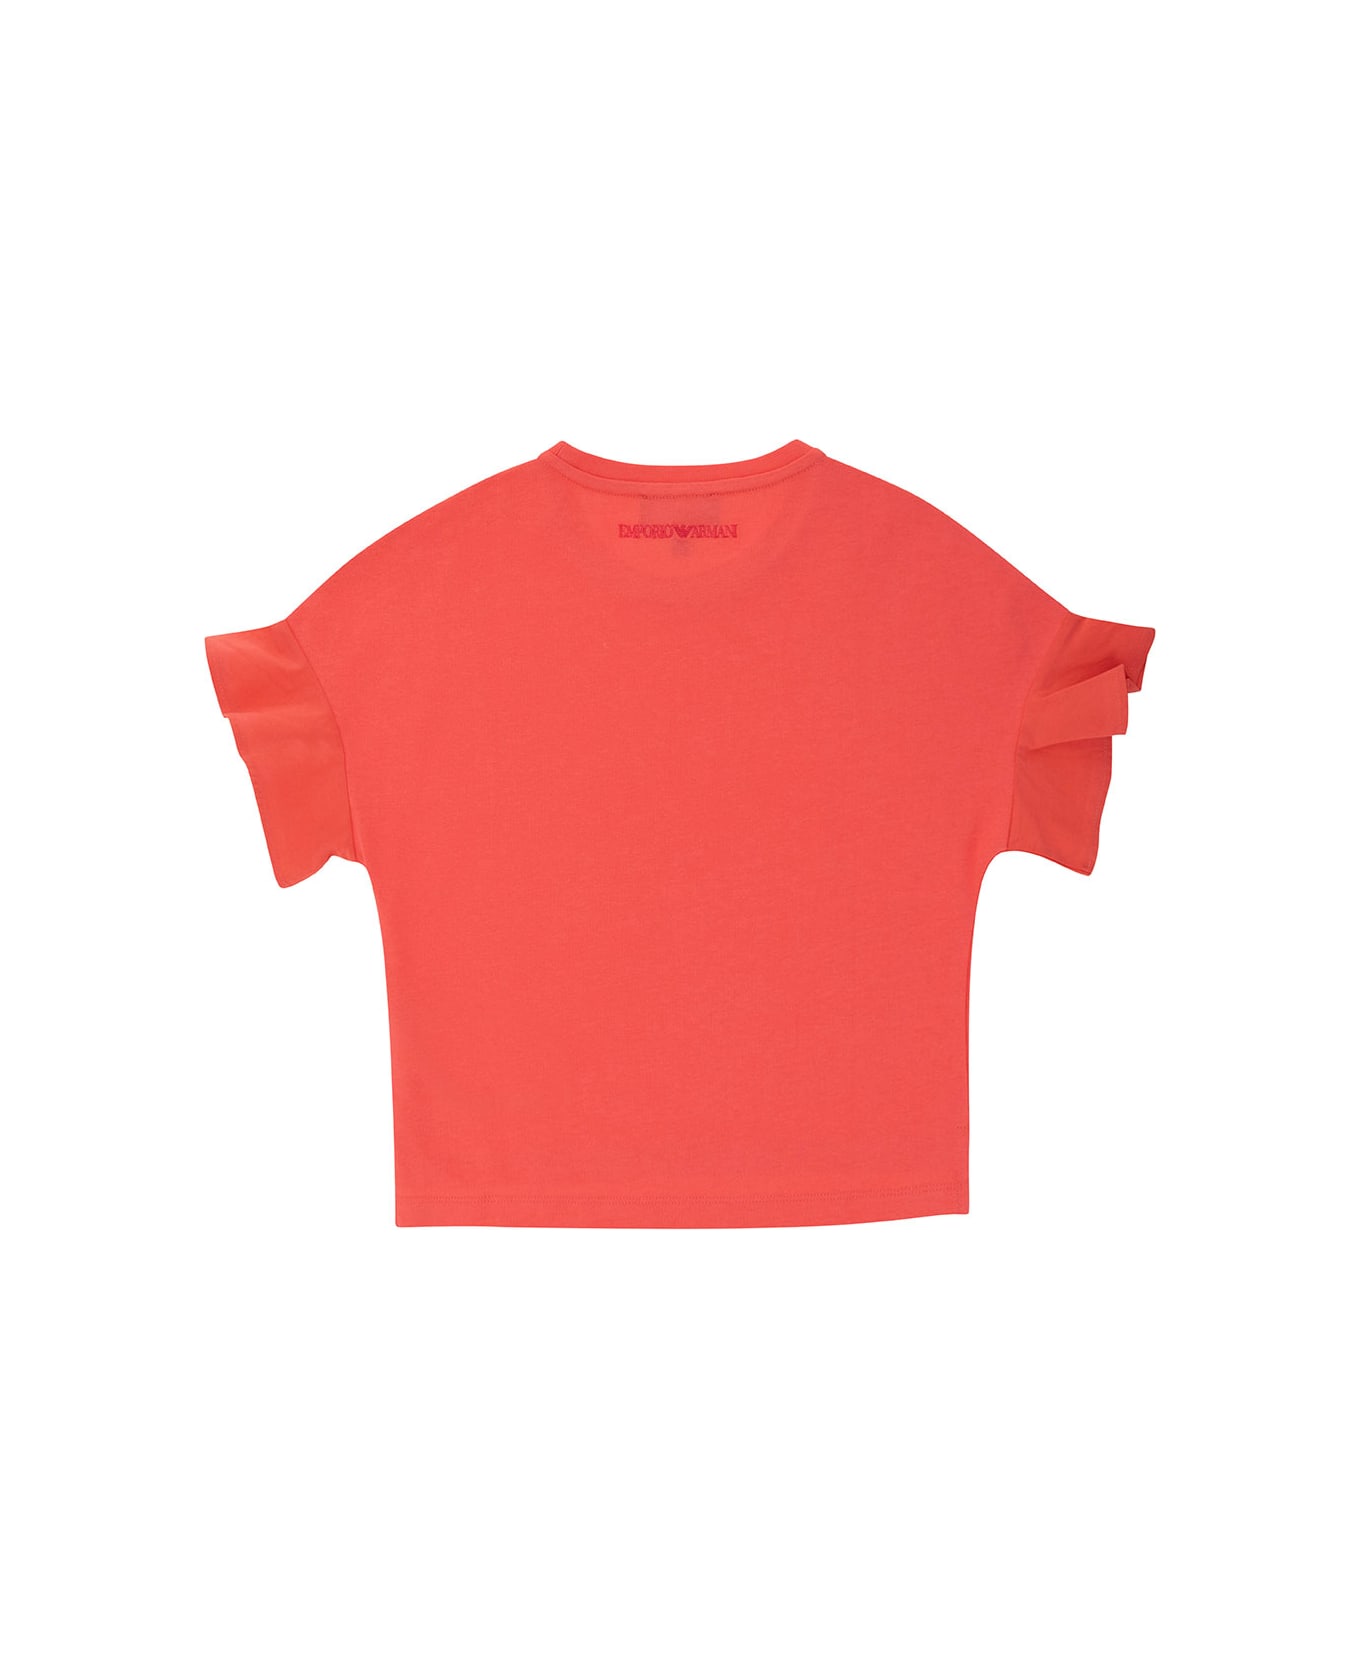 Emporio Armani Orange Crewneck T-shirt In Cotton Girl - Fuxia